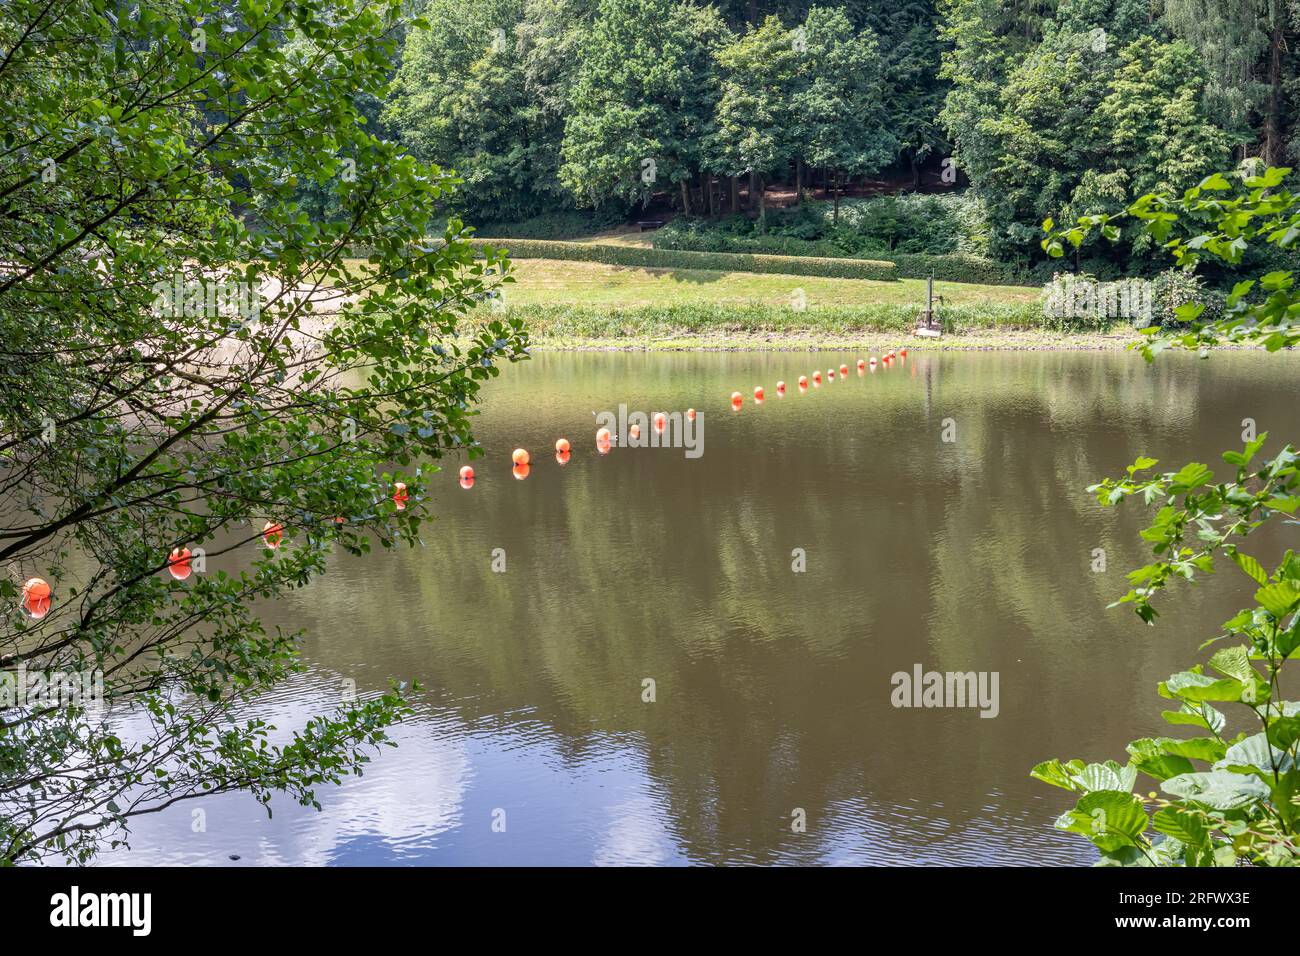 Fiume Prum nel bacino idrico di Stausee Bitburg con boe arancioni e riflessi sulla superficie dell'acqua, alberi verdi sullo sfondo, soleggiato giorno primaverile Foto Stock